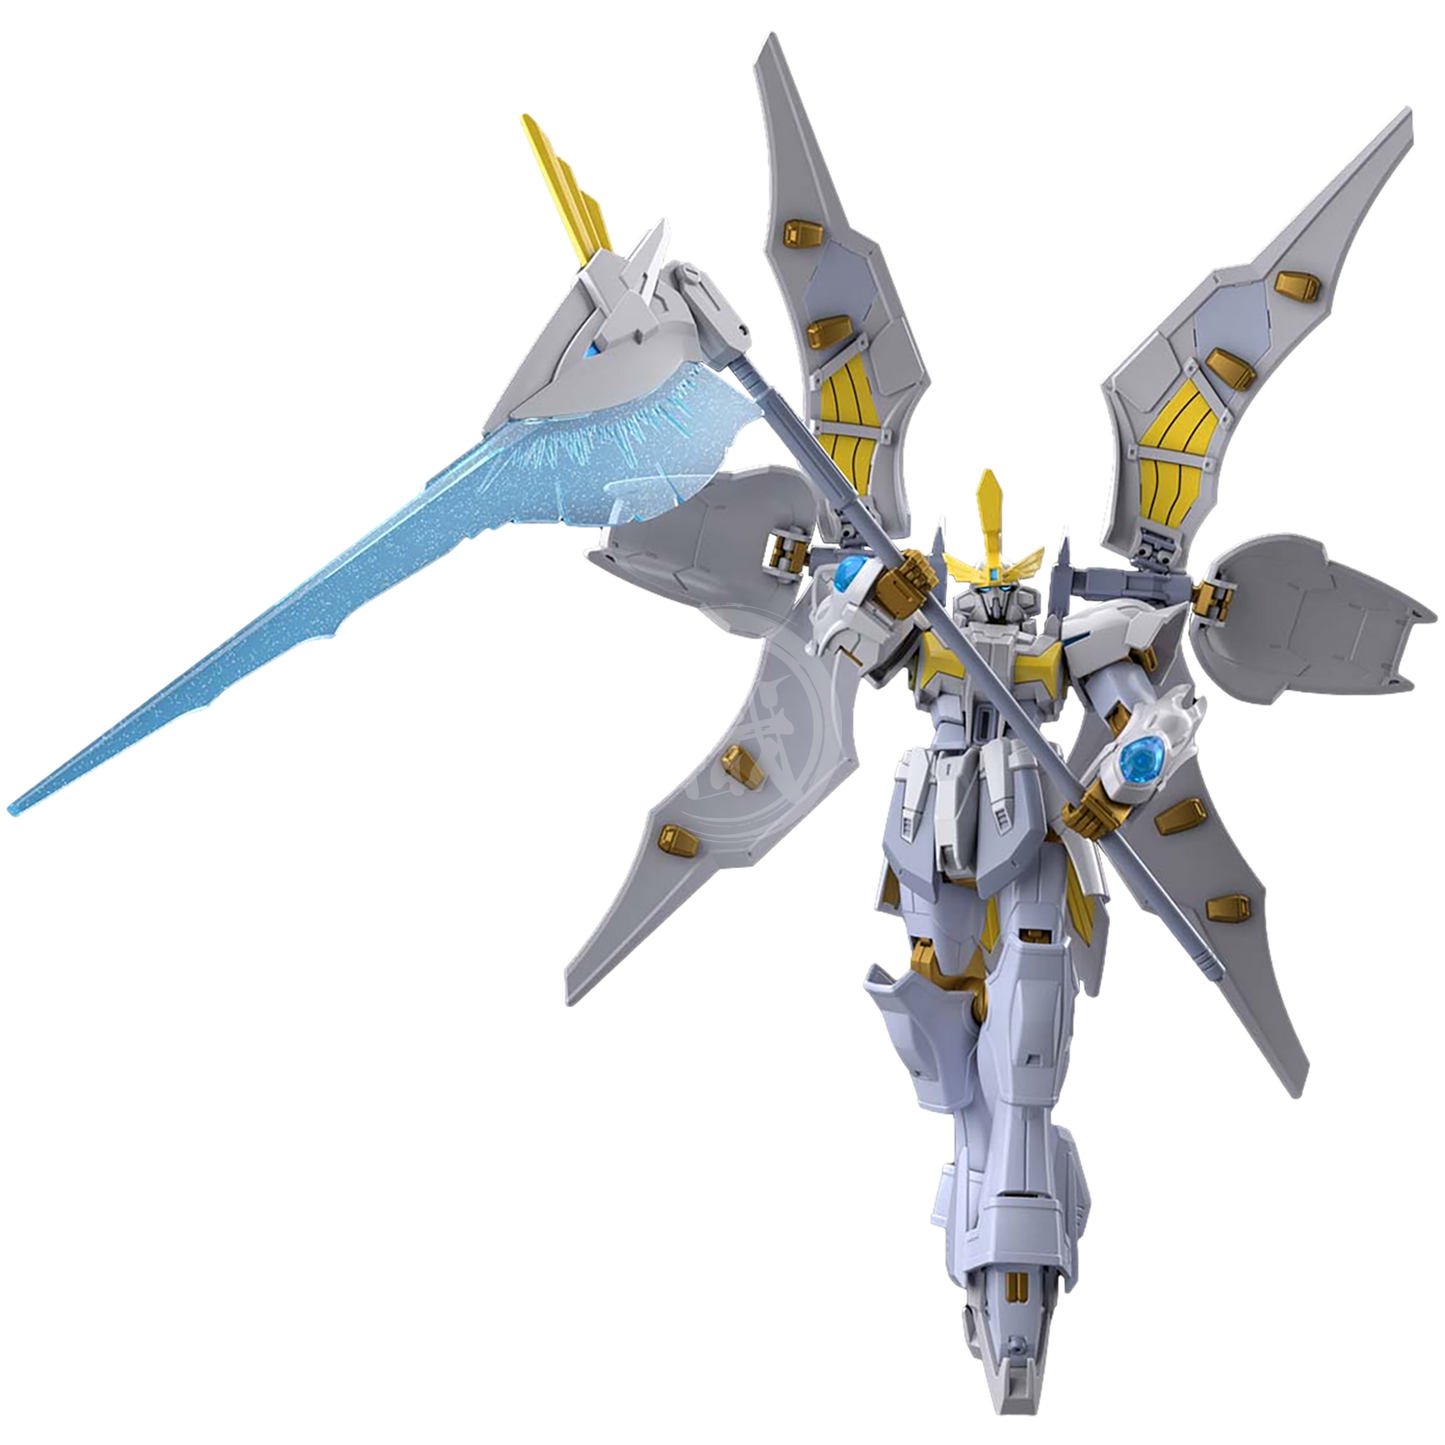 HG Gundam Livelance Heaven - ShokuninGunpla